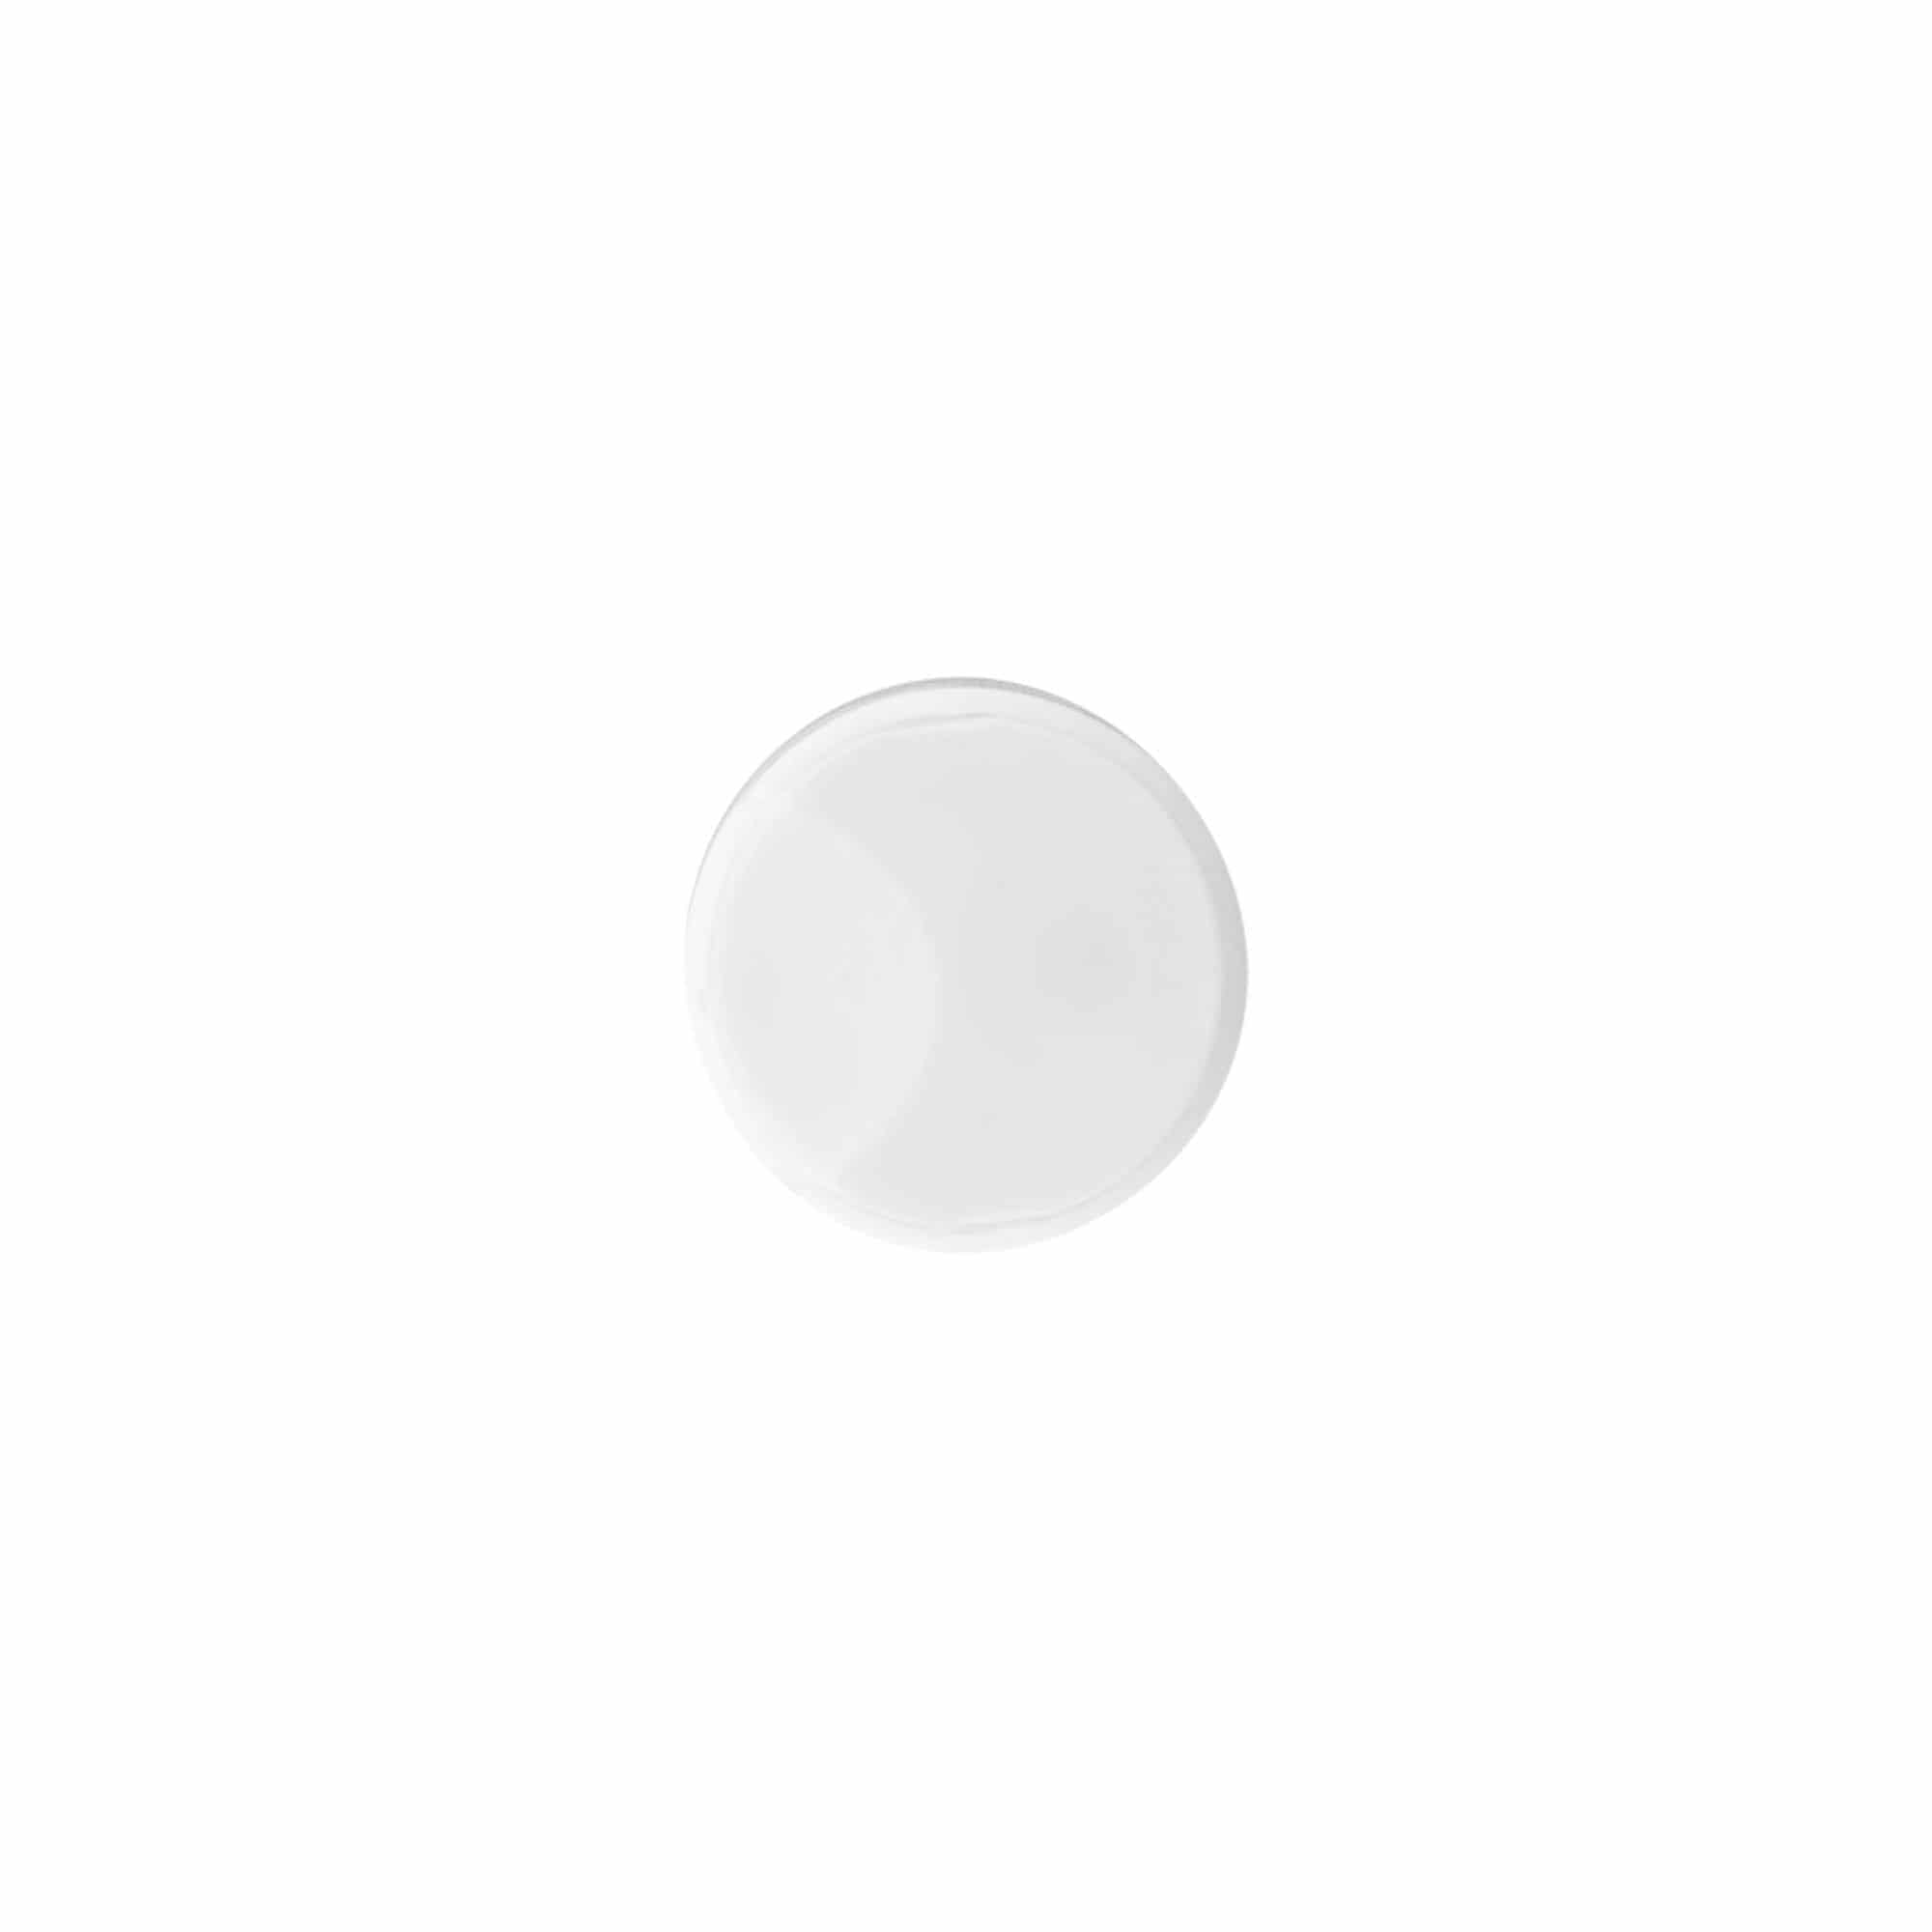 Zakrętka Disc Top, tworzywo sztuczne PP, kolor biały, do zamknięcia: GPI 24/410